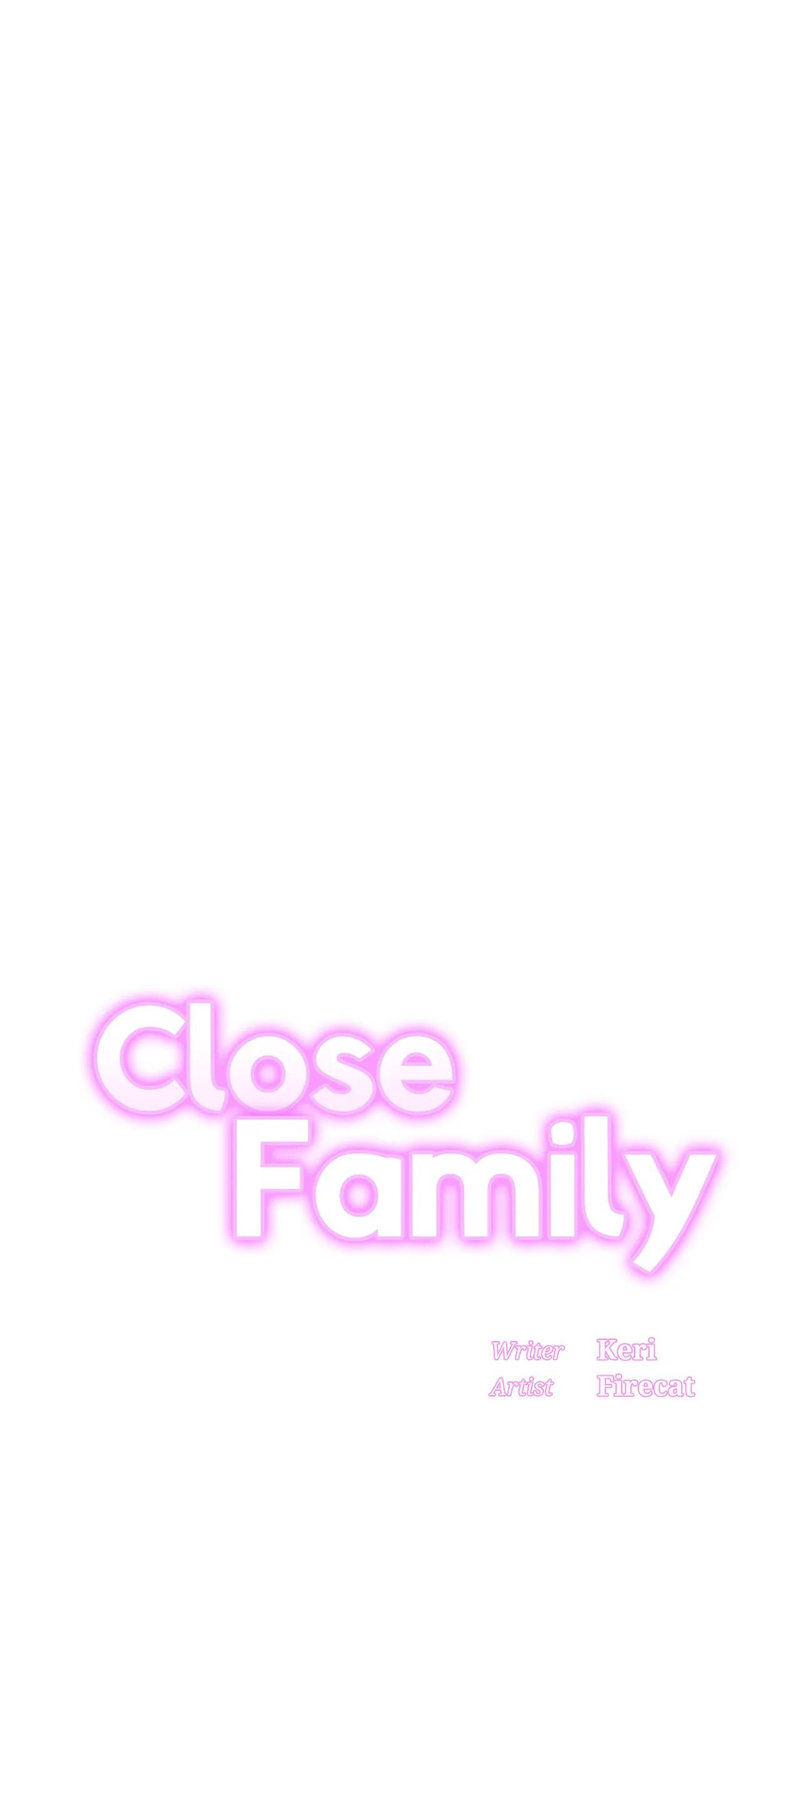 Watch image manhwa Close Family - Chapter 59 - 01caa37e77b078c86a - ManhwaXX.net